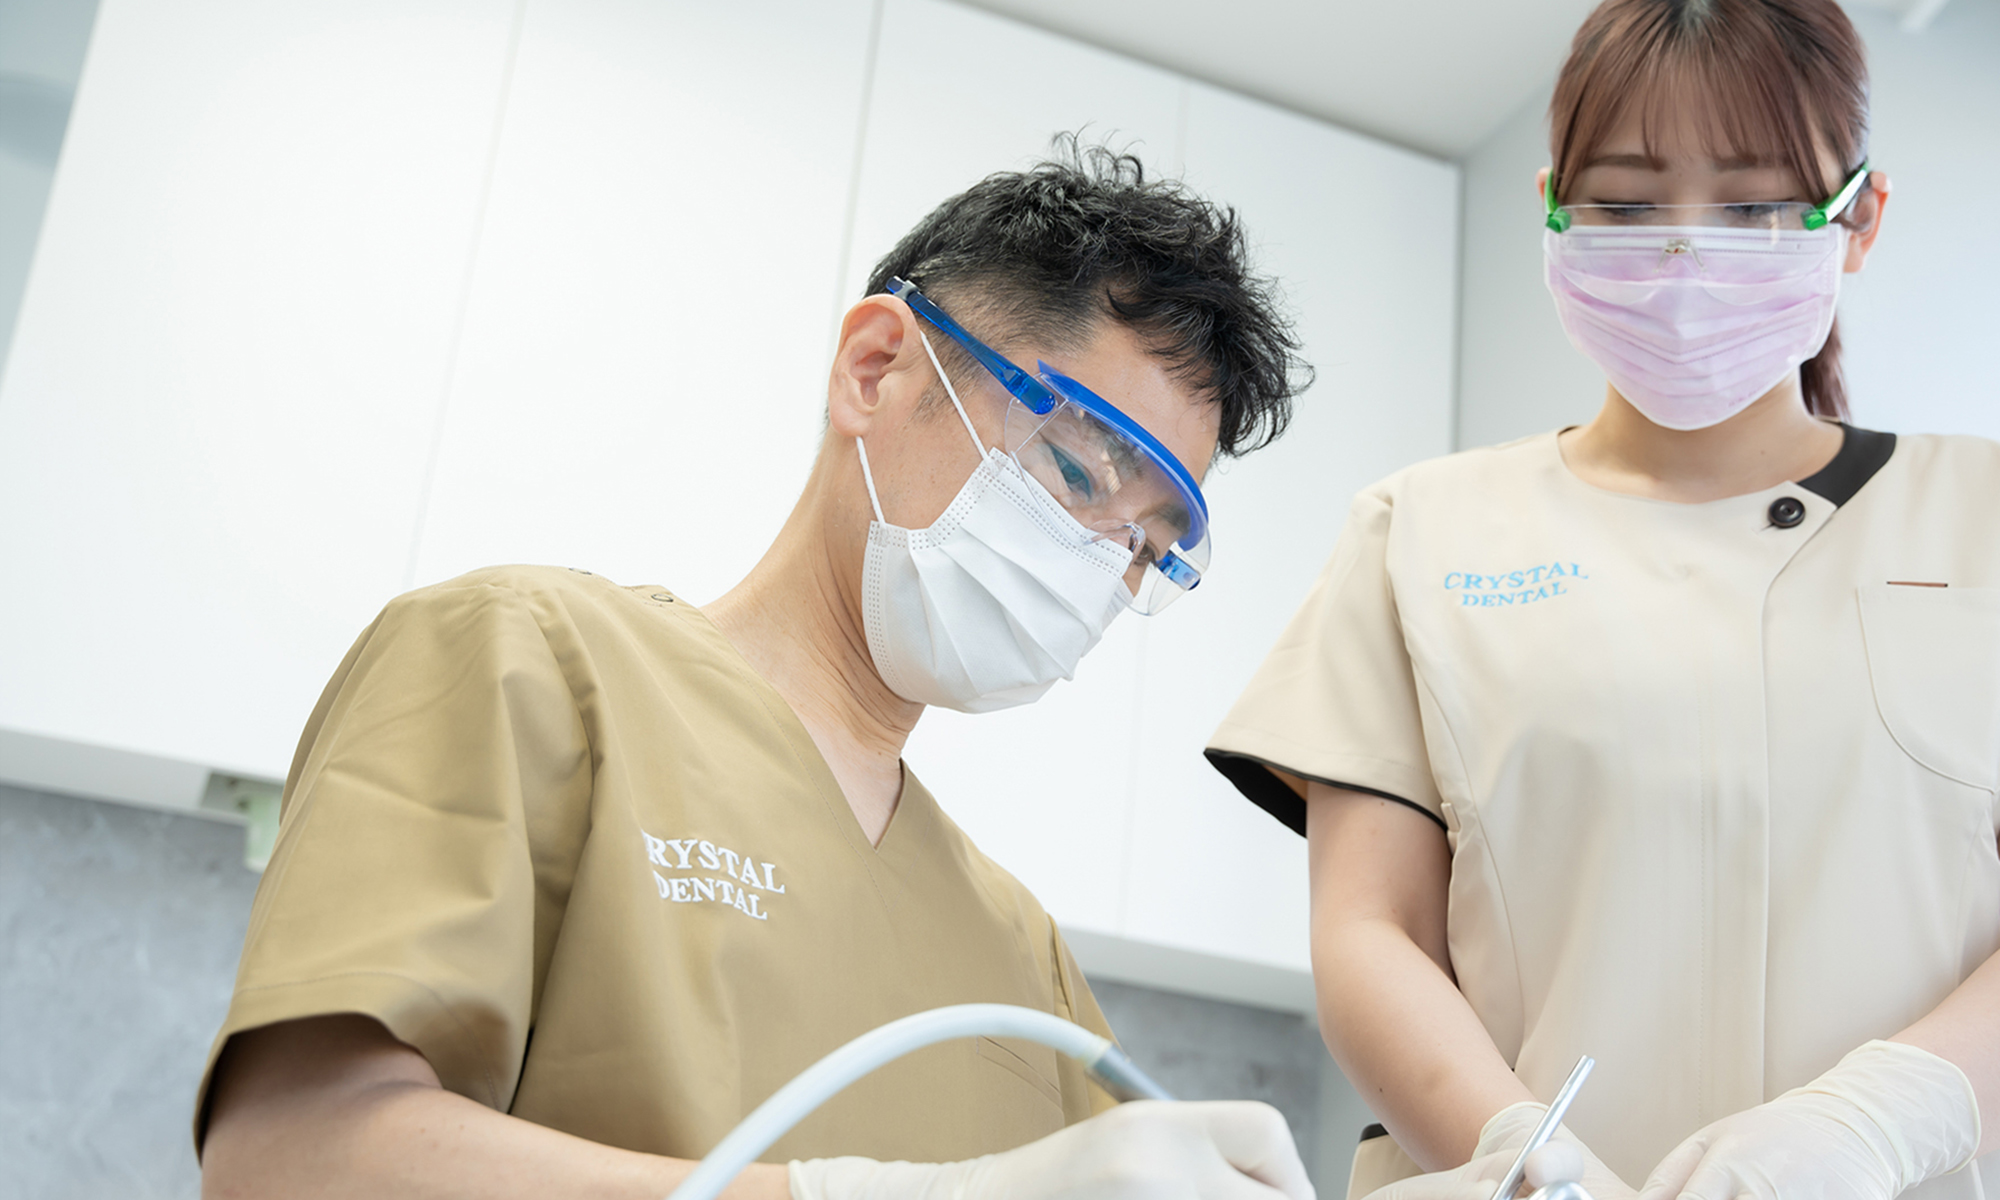 名古屋のインプラント治療を専門とする歯医者、クリスタル歯科